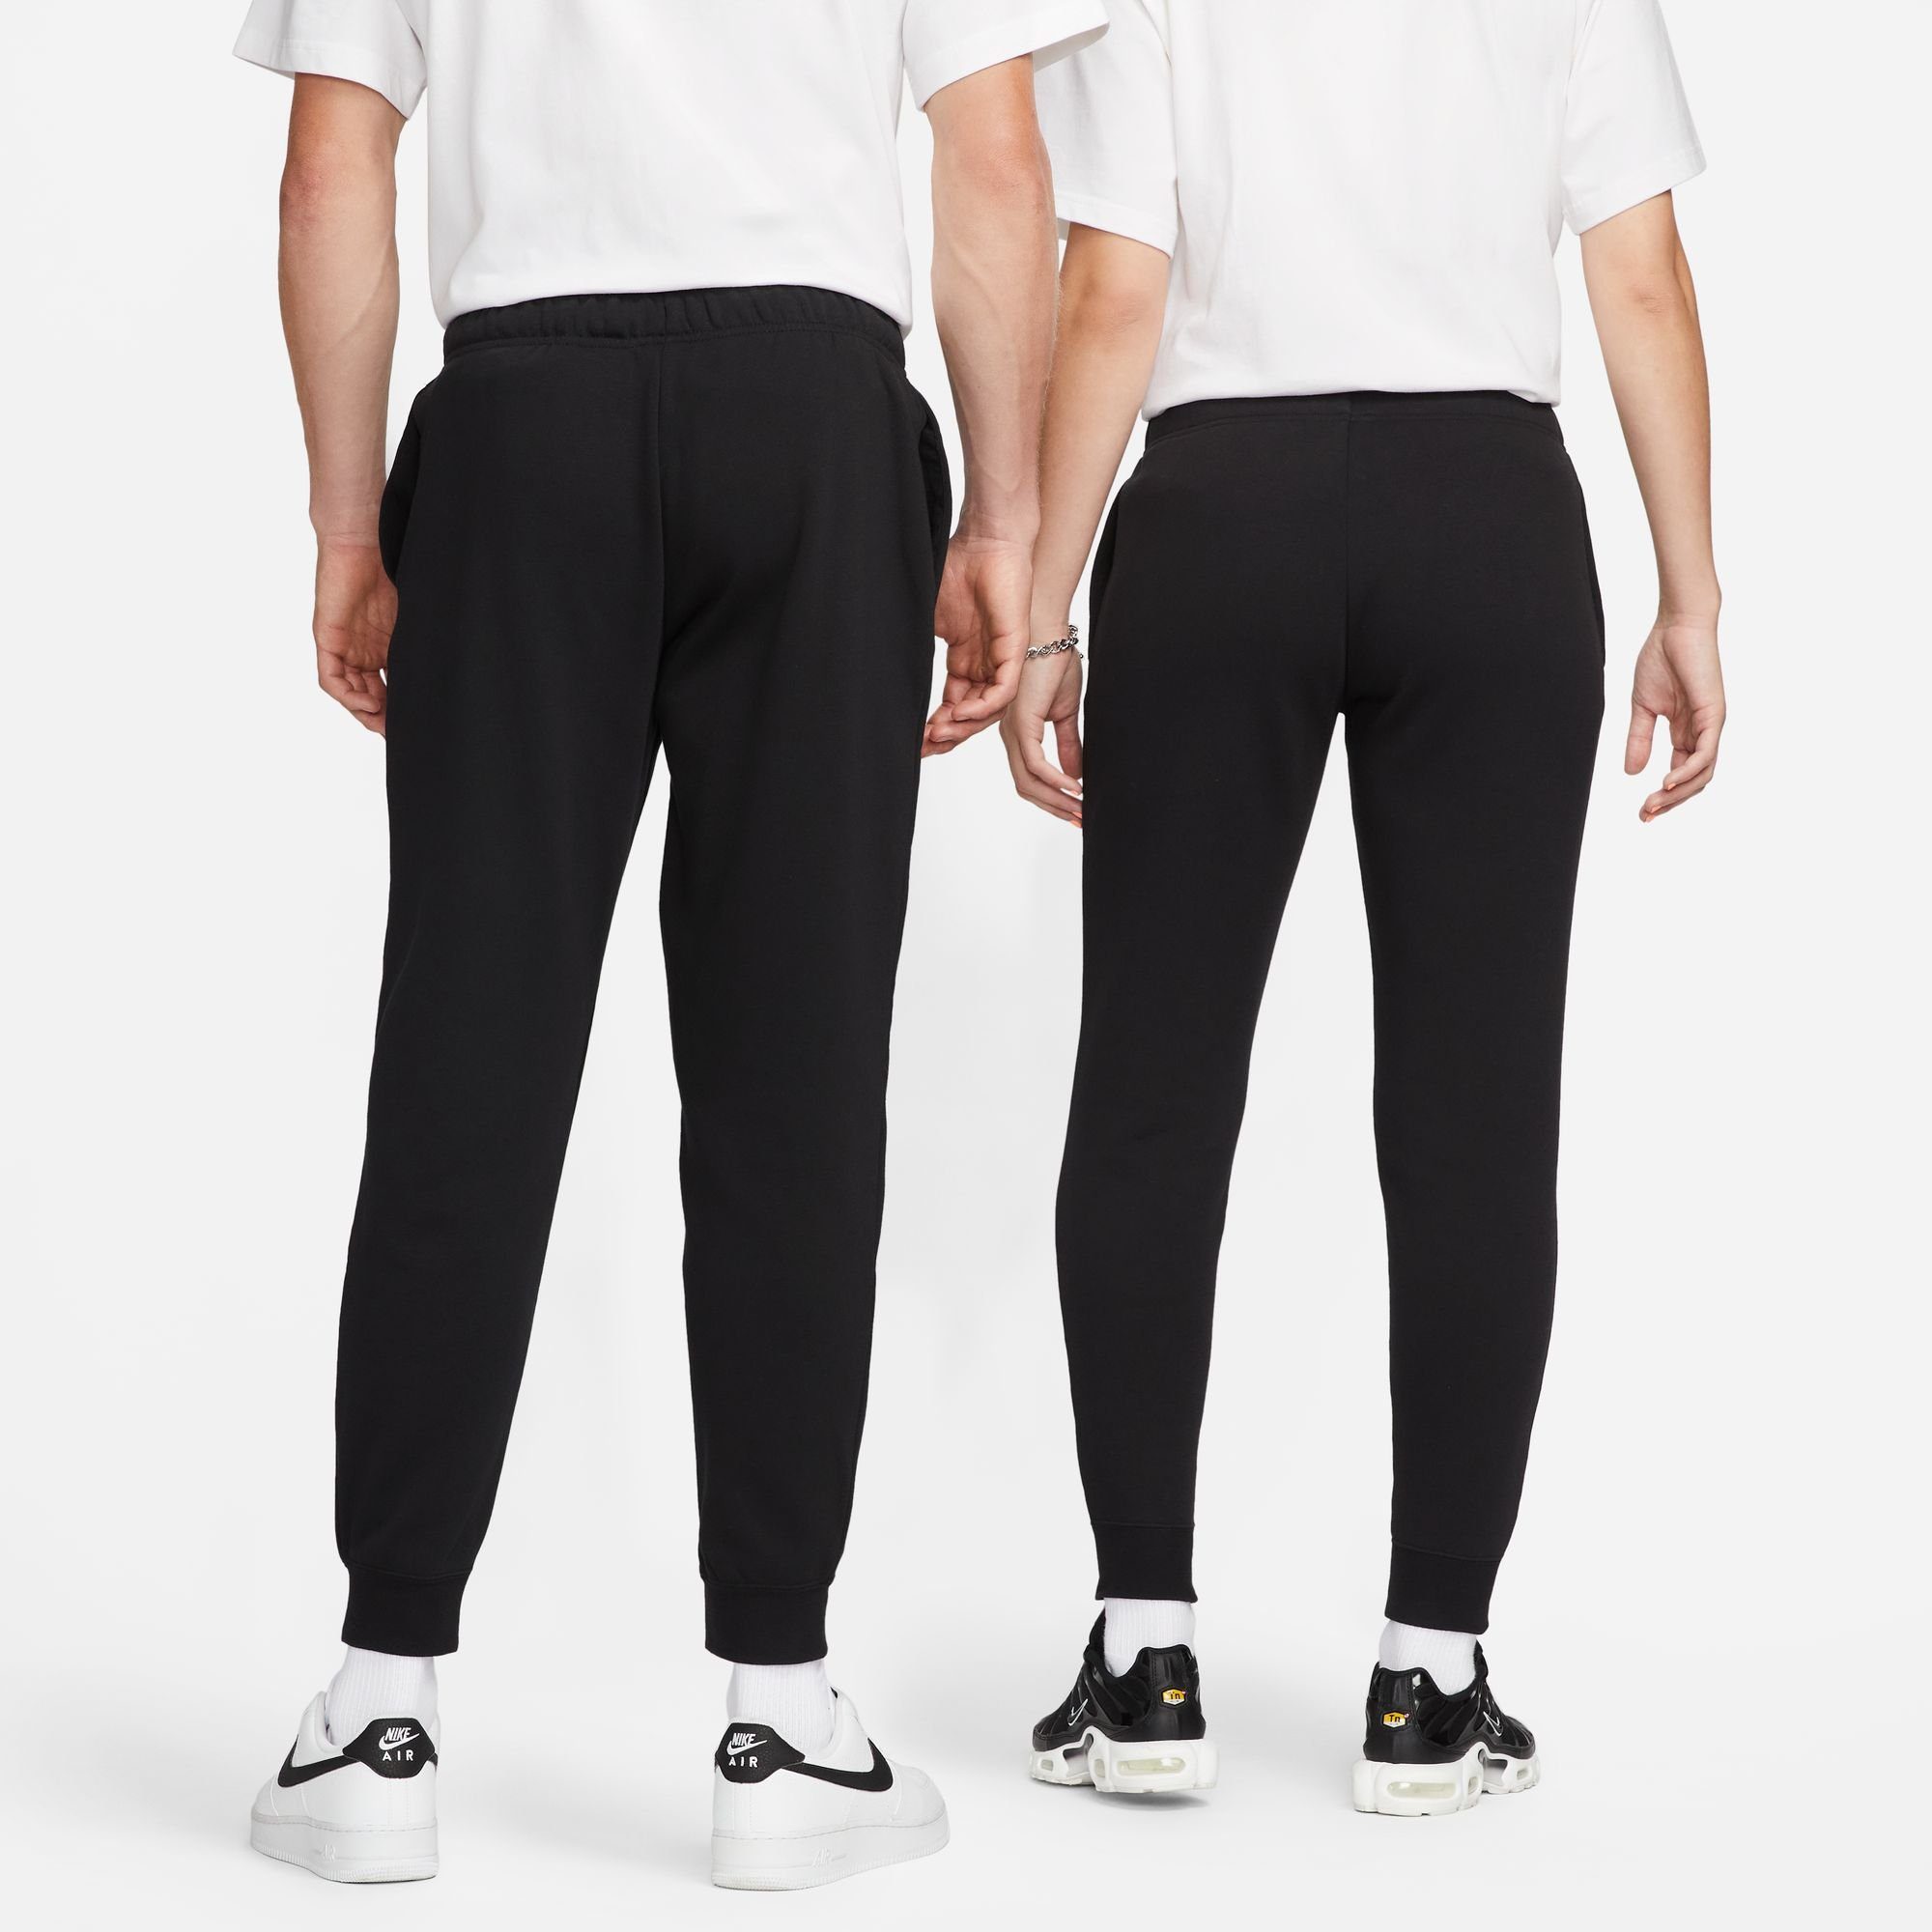 MID-RISE Nike Sportswear CLUB JOGGERS BLACK/WHITE Jogginghose WOMEN'S FLEECE